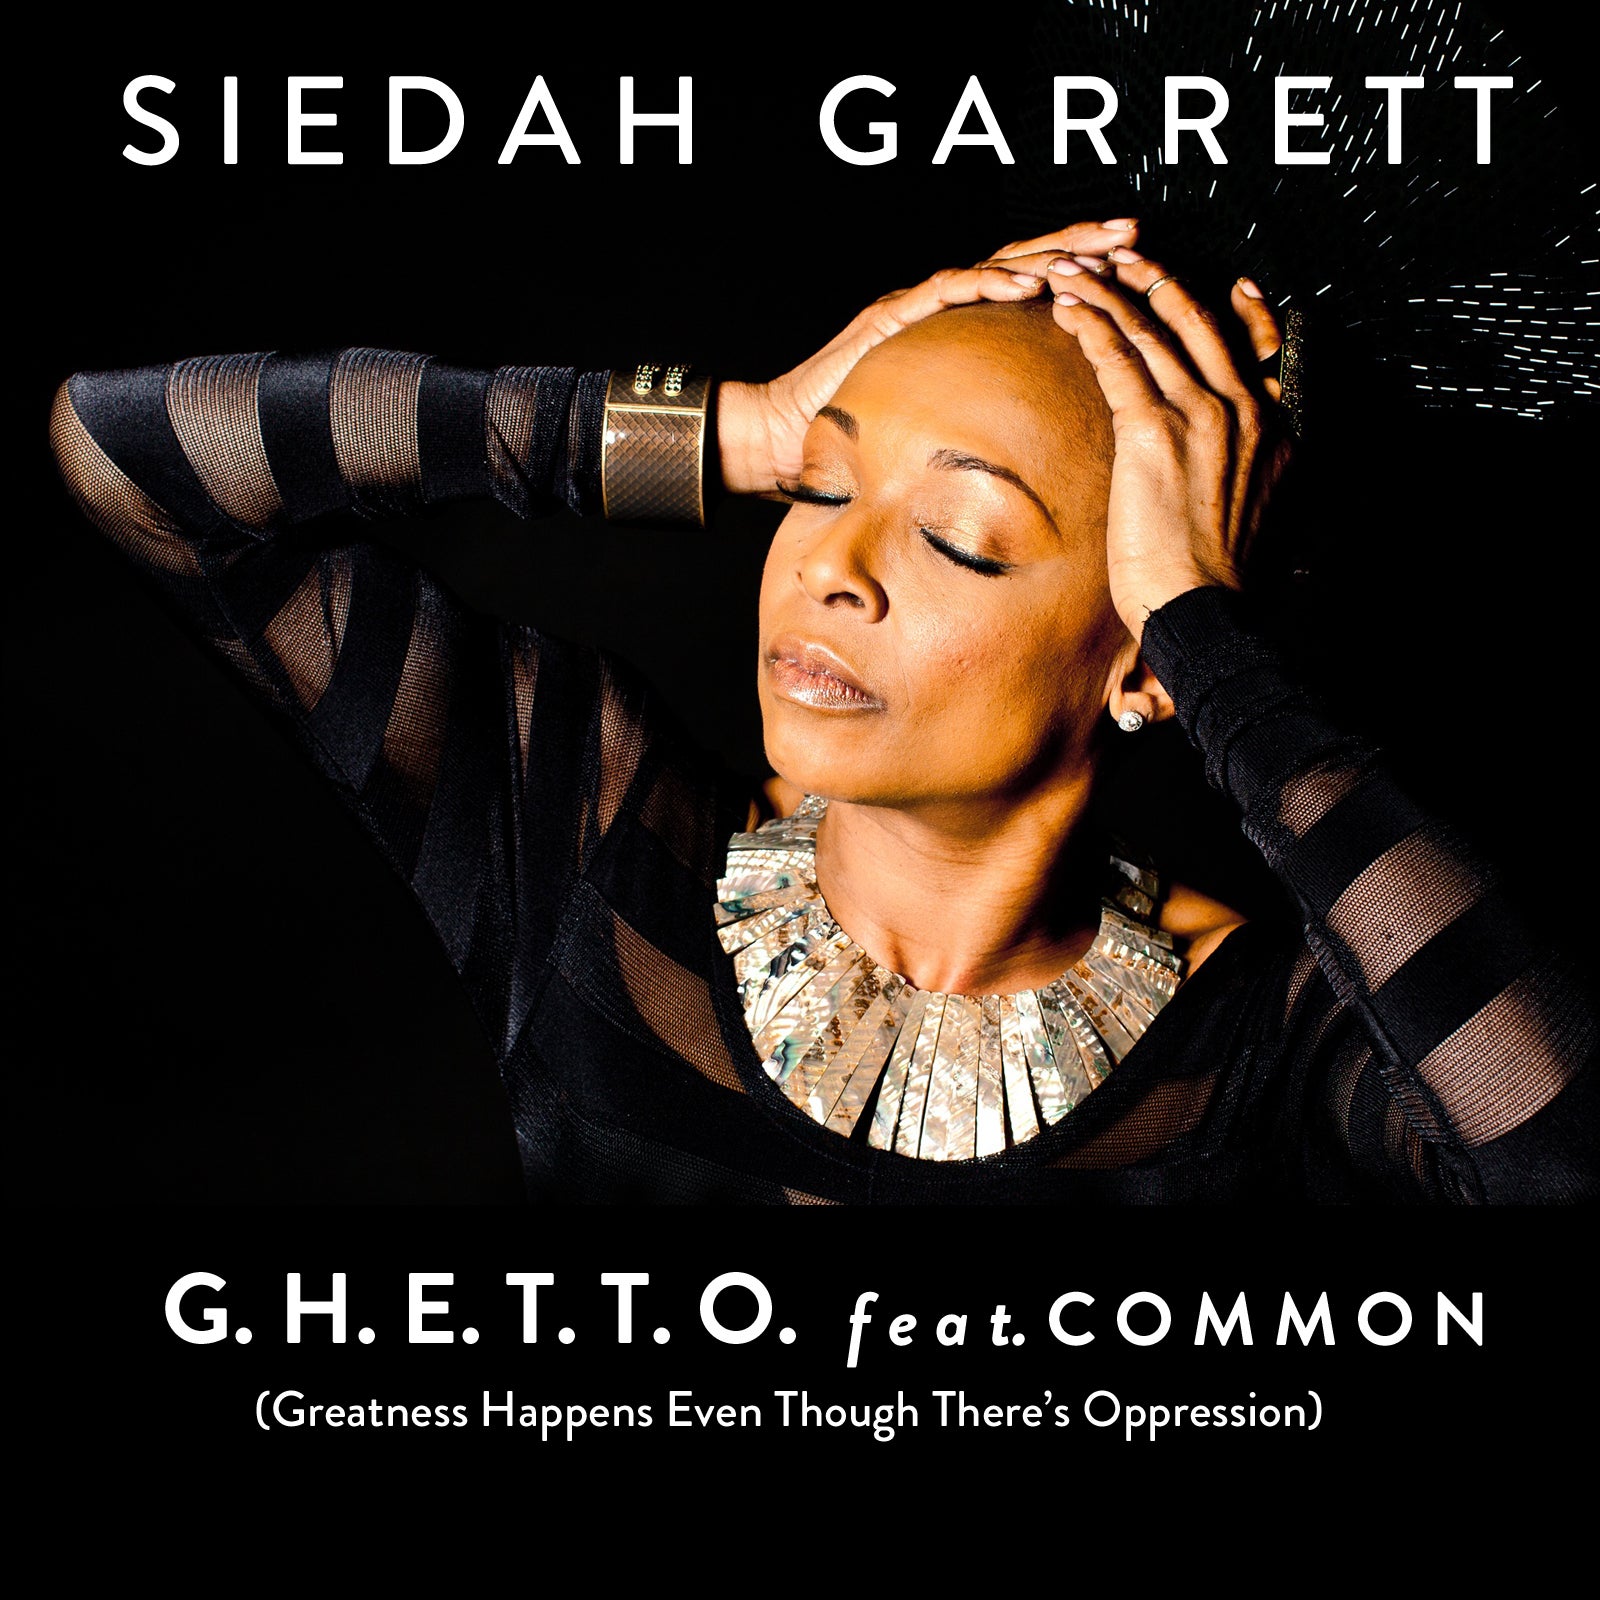 EXCLUSIVE: Listen to Common and Siedah Garrett's "G.H.E.T.T.O."
